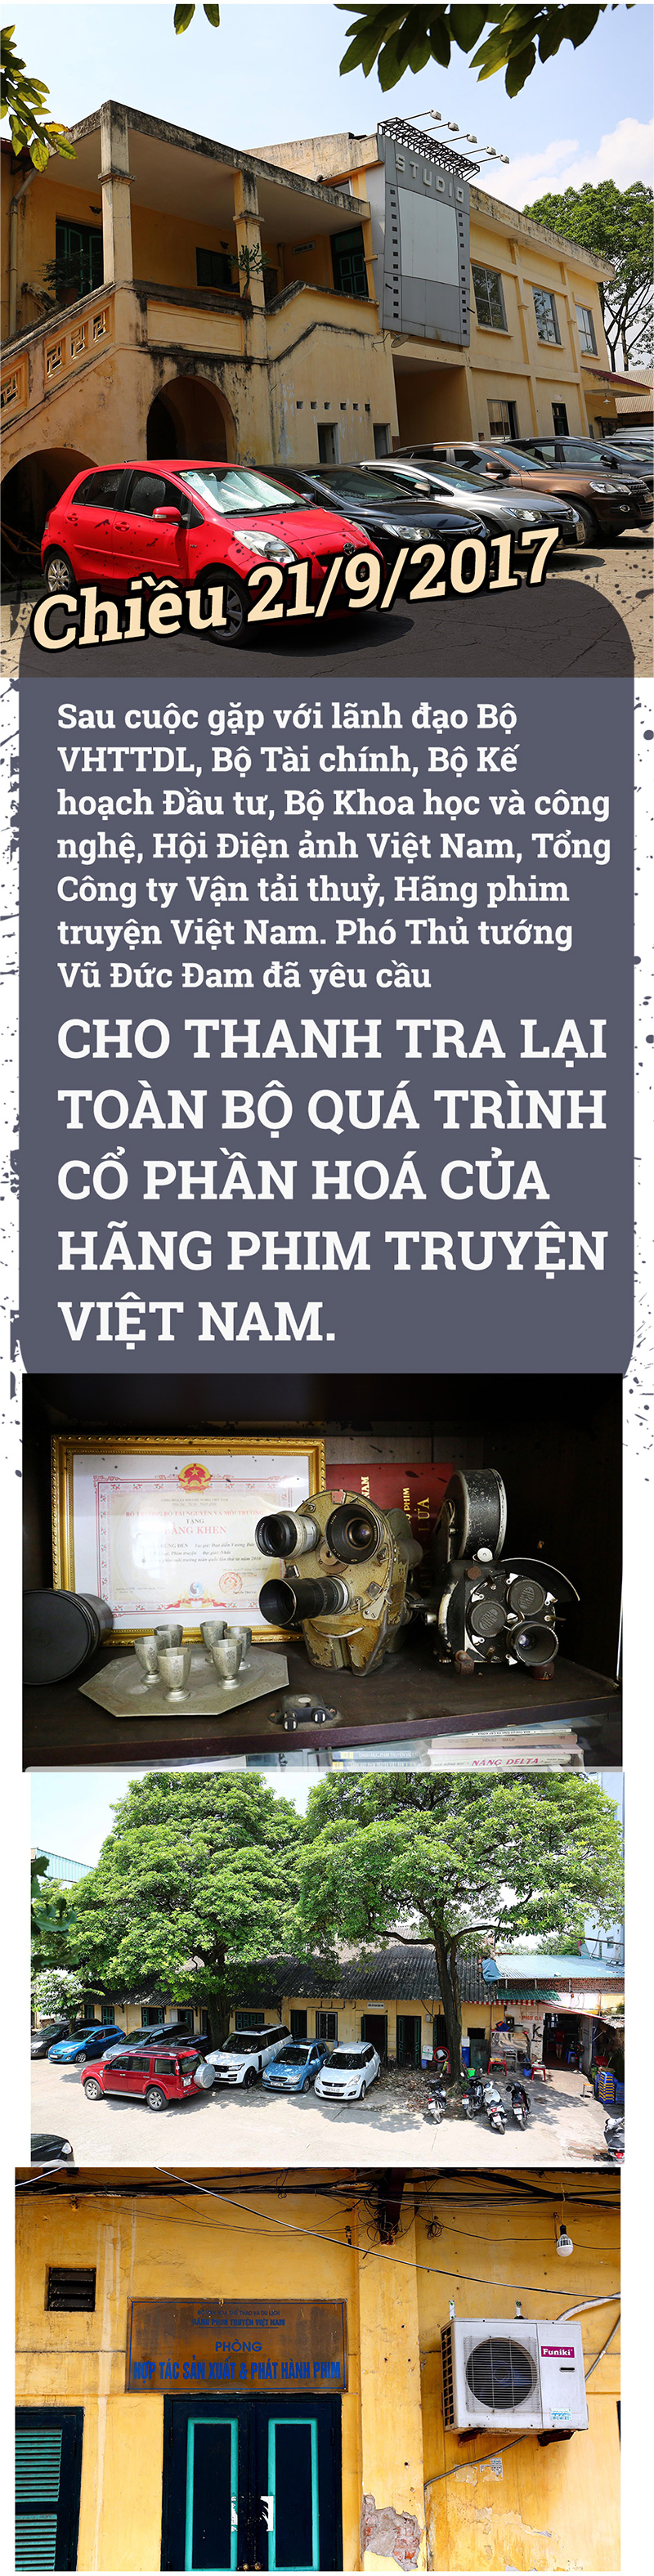 hãng phim truyện Việt Nam